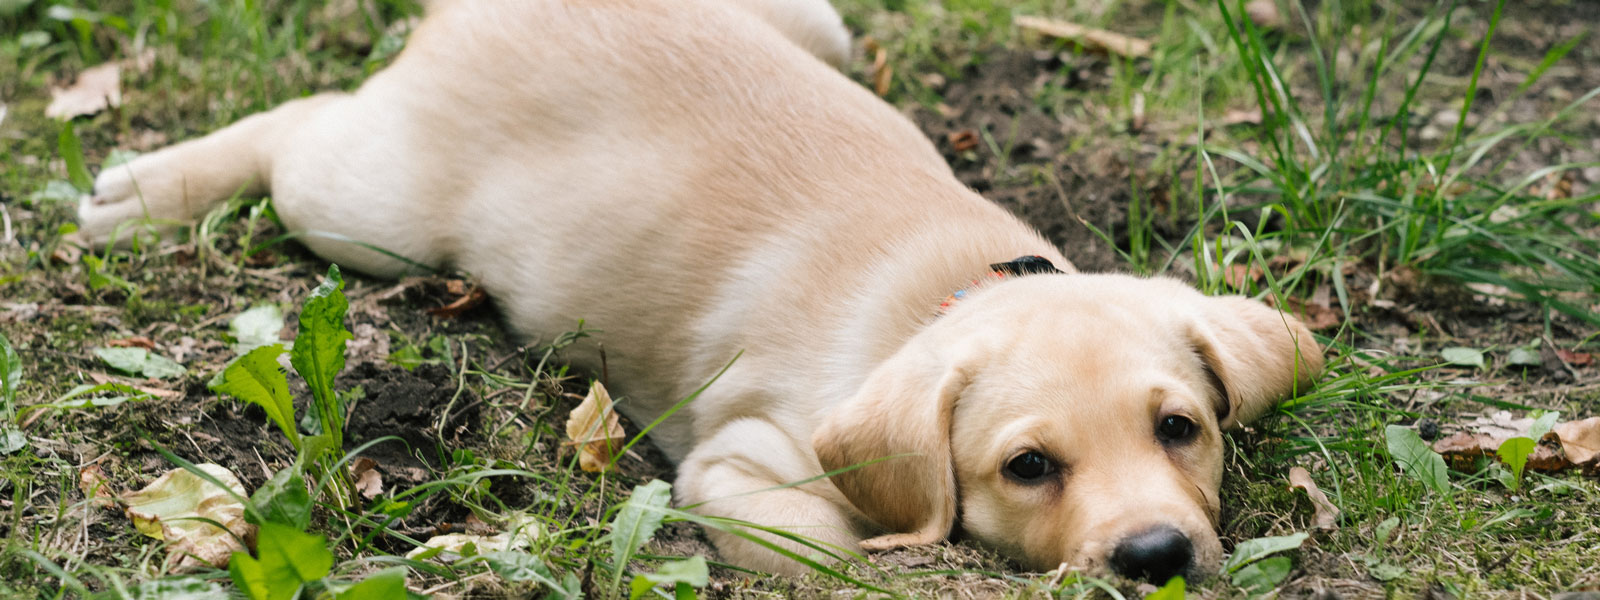 puppy lieing on grass